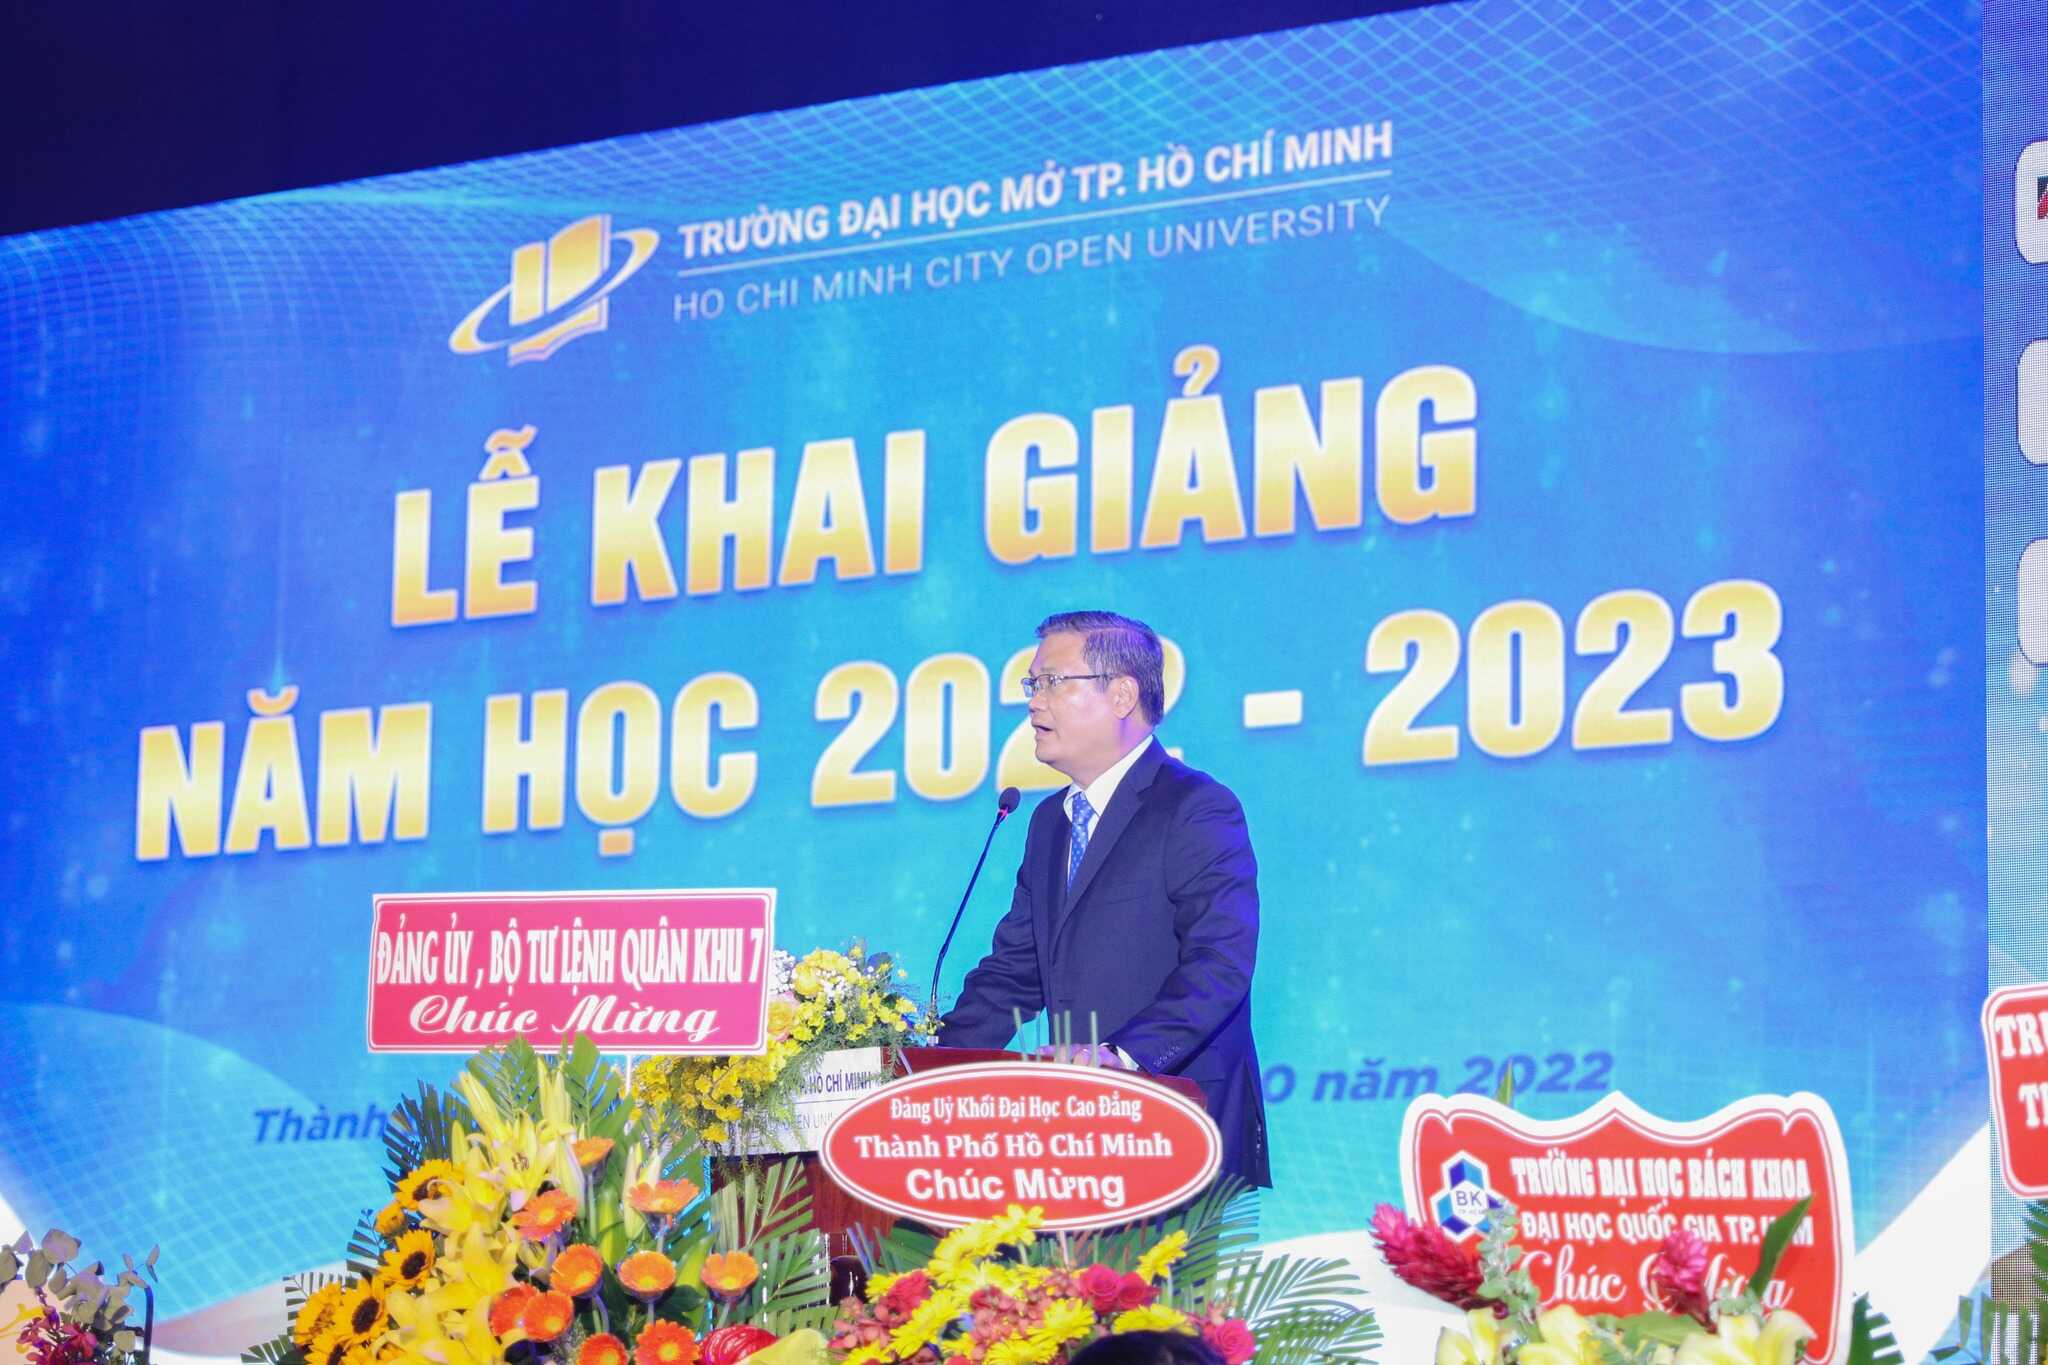 LỄ KHAI GIẢNG NĂM HỌC 2022-2023 TRƯỜNG ĐẠI HỌC MỞ TP. HỒ CHÍ MINH